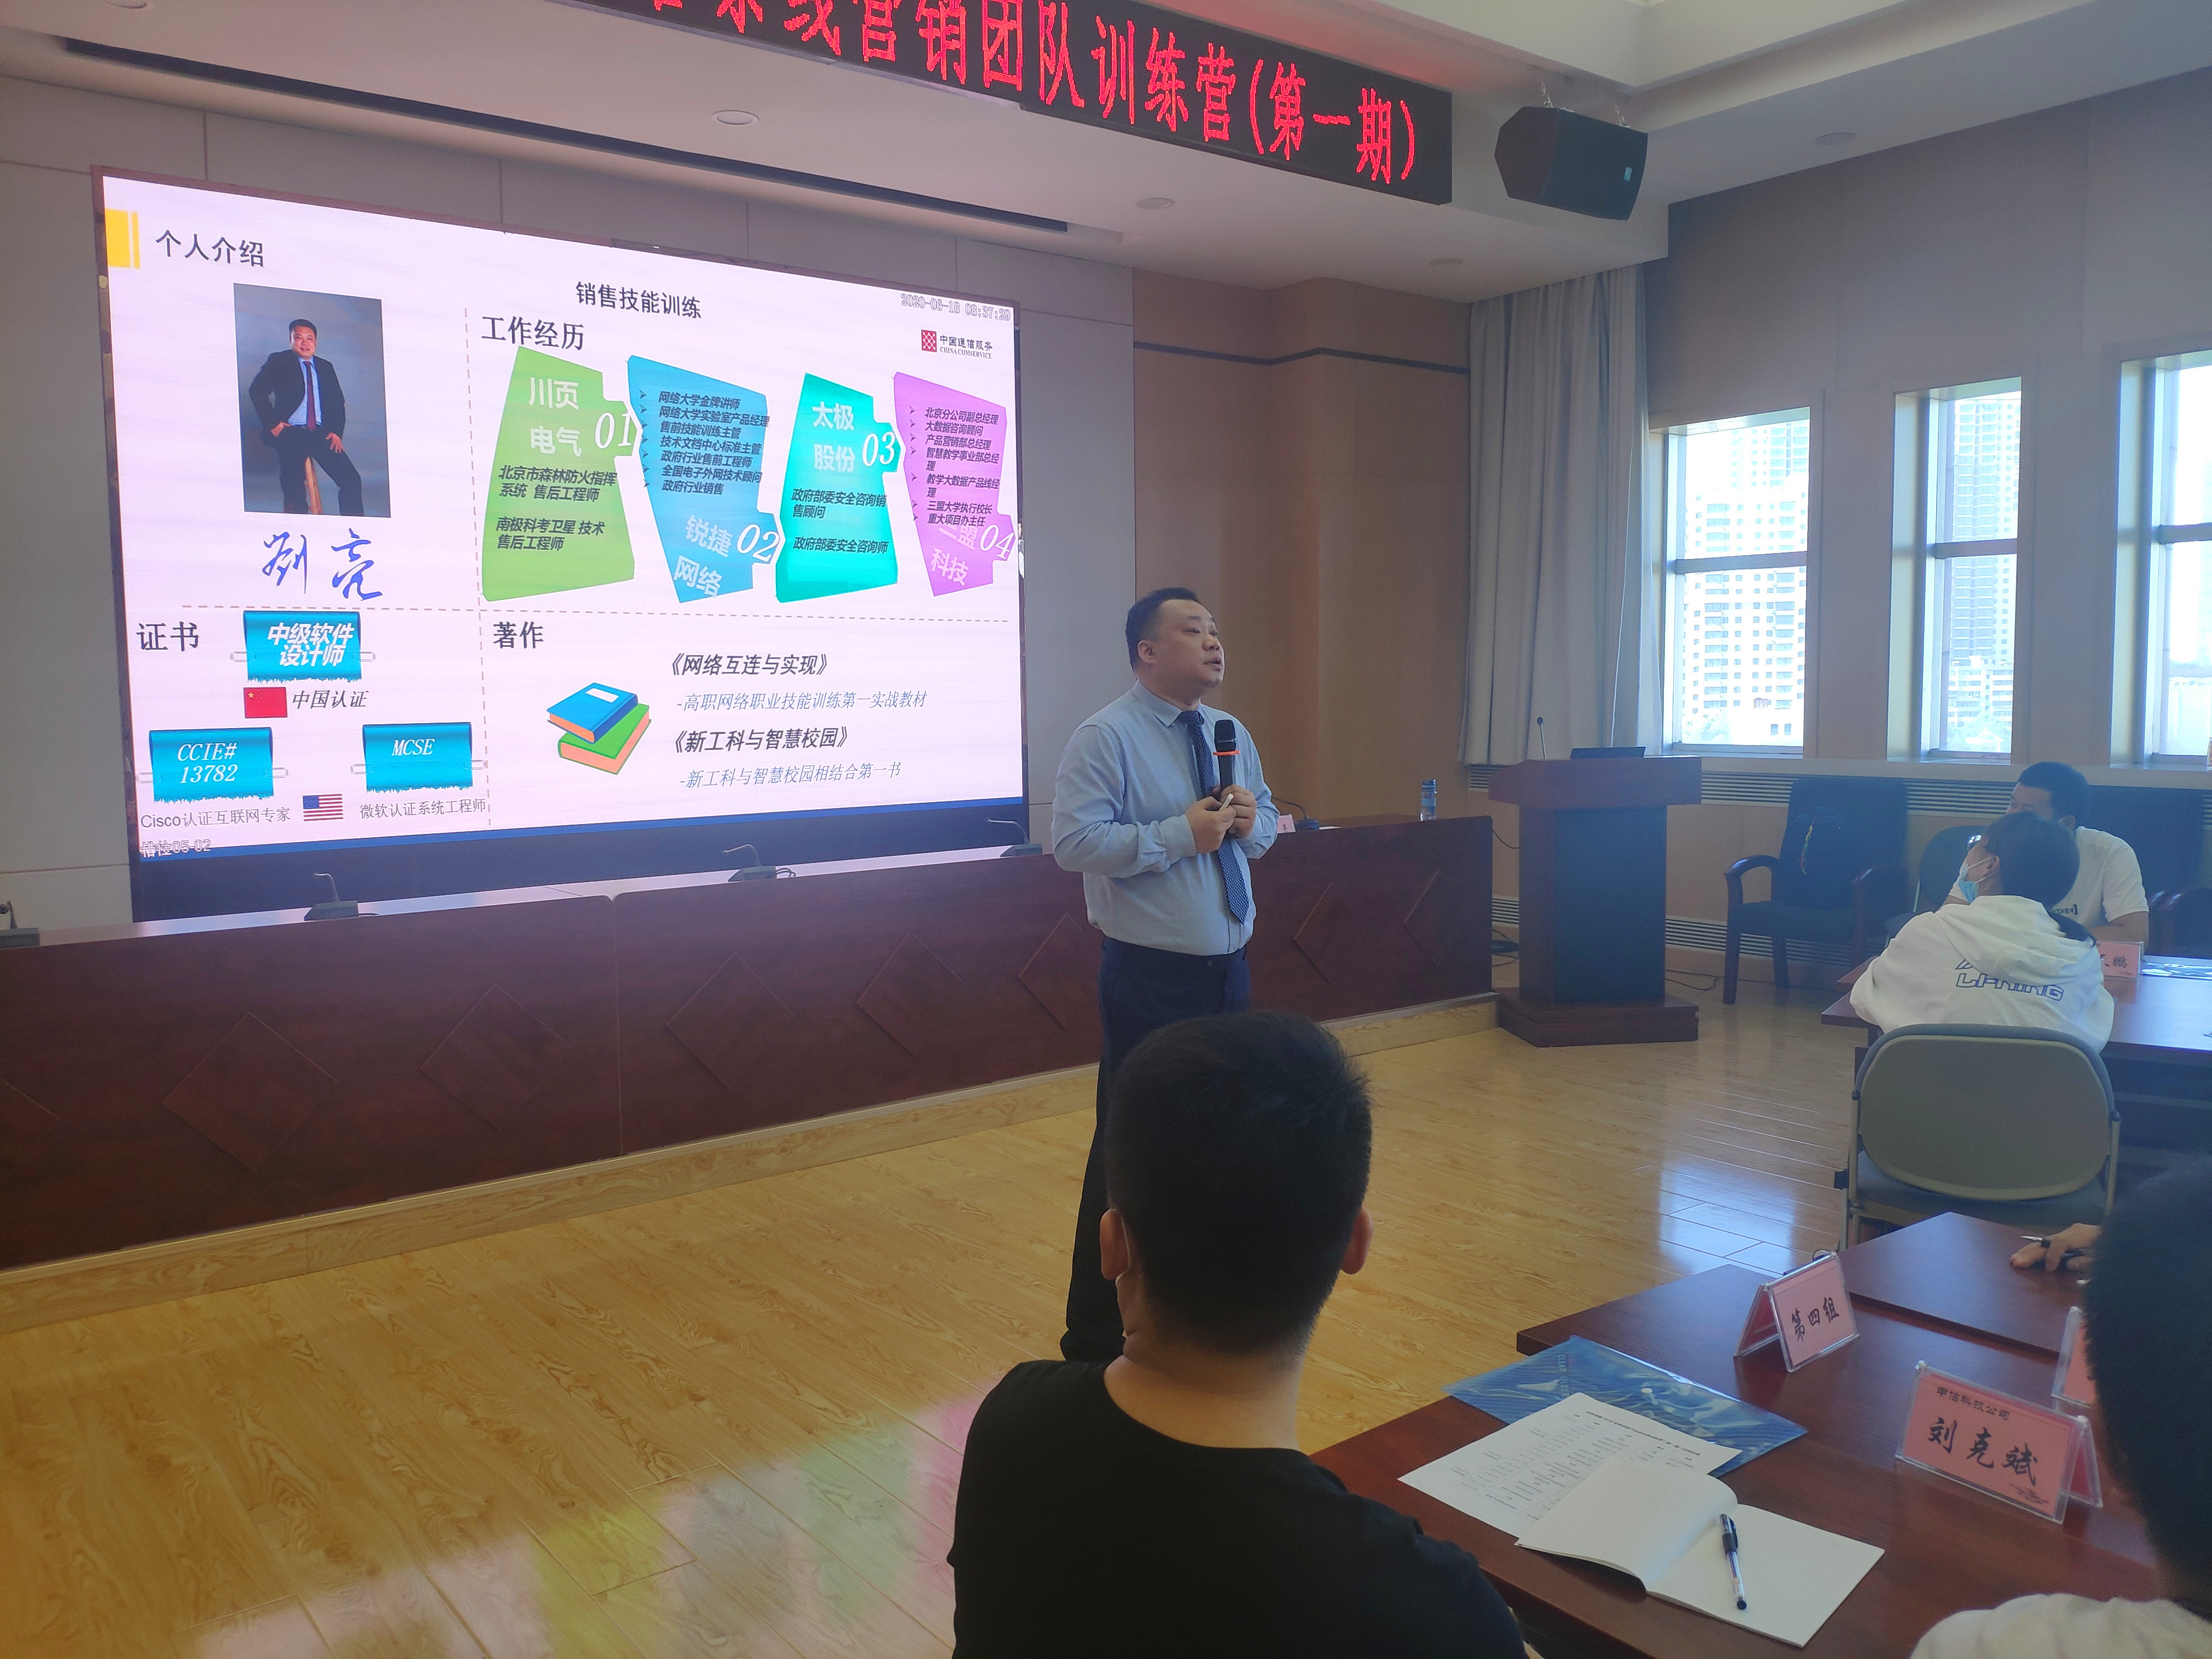 2020年刘亮老师在兰州讲授《大客户关系突破与销售技能场景化训练》现场